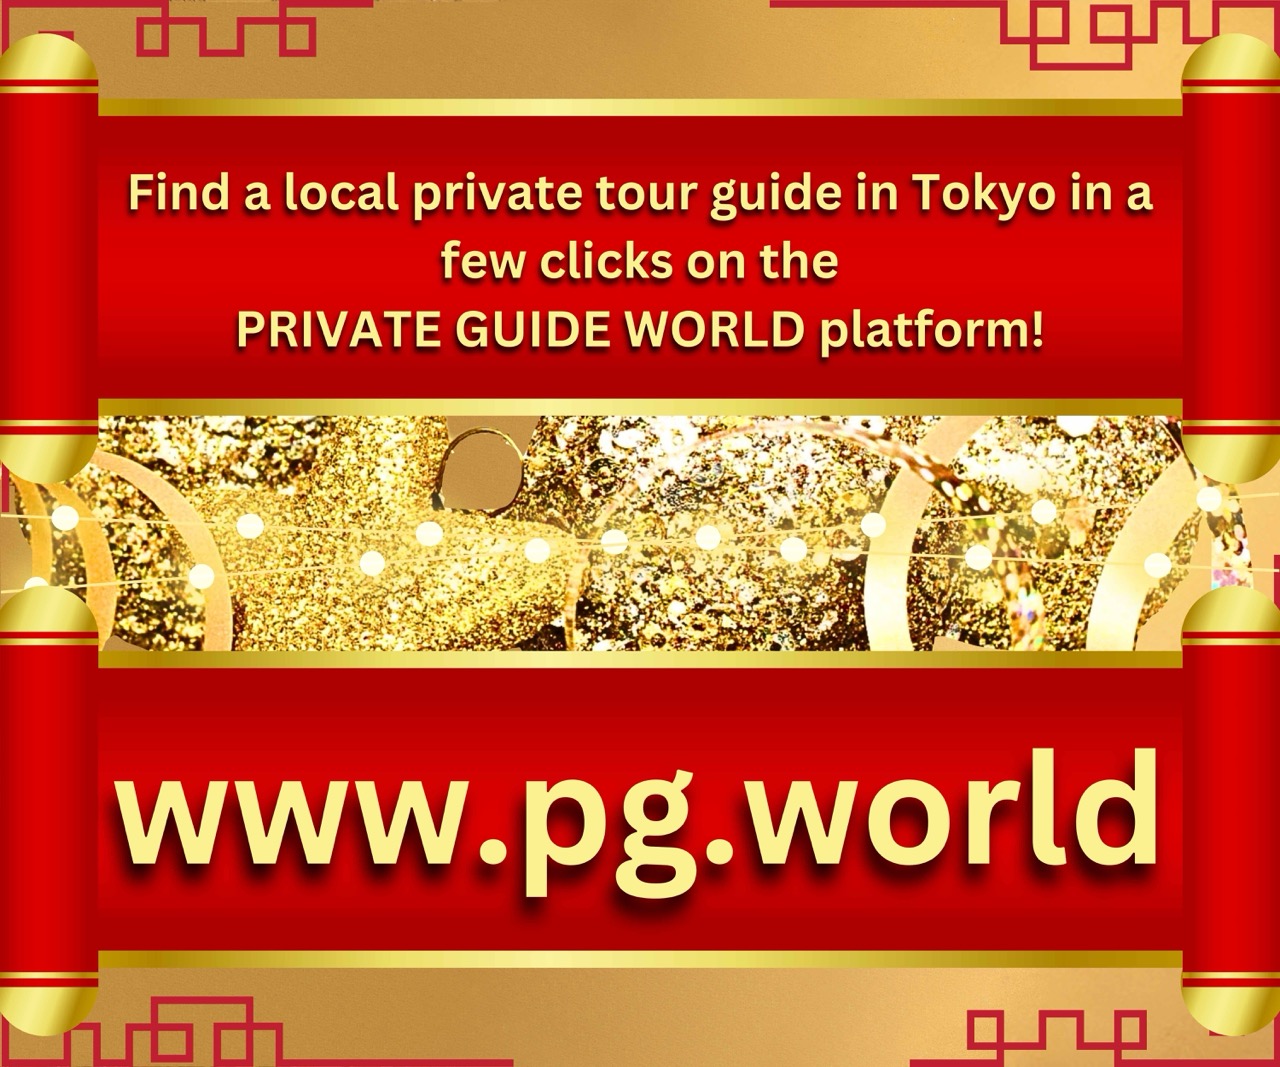 Find a local private tour guide in Tokyo in a few clicks!